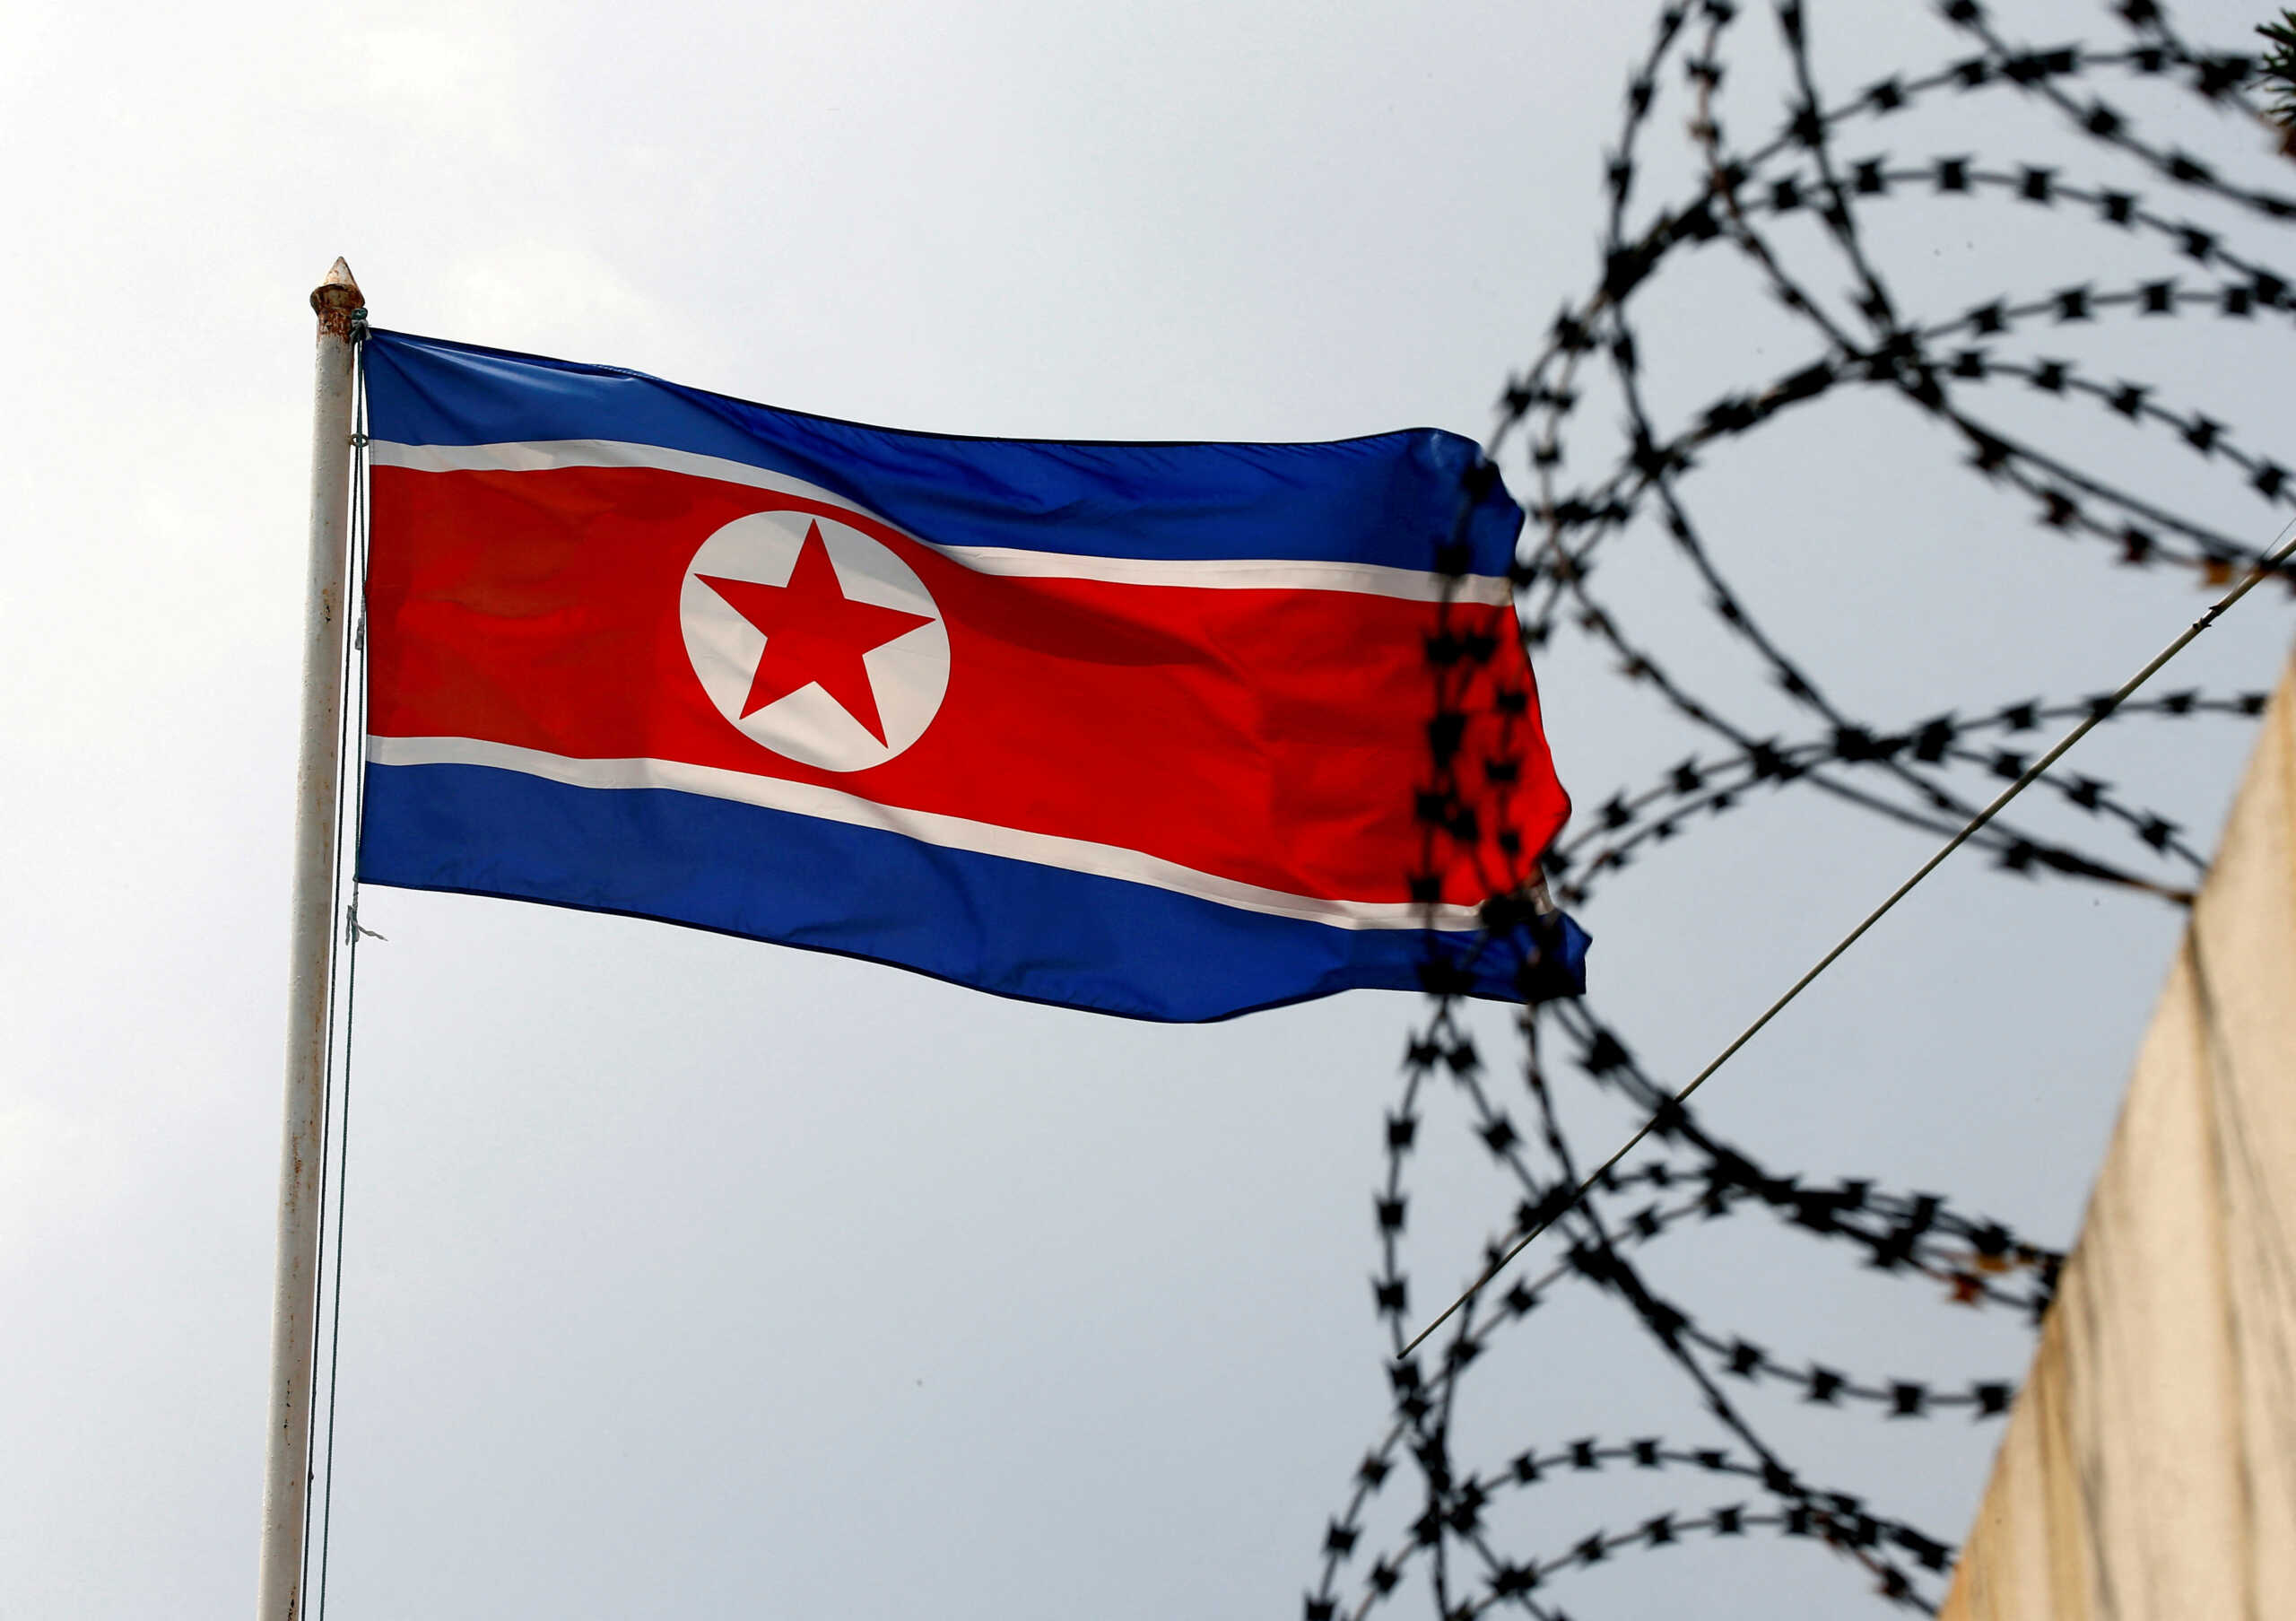 Βόρεια Κορέα: Οι στρατιωτικές ασκήσεις ΗΠΑ – Νότιας Κορέας μπορεί να προκαλέσουν θερμοπυρηνικό πόλεμο